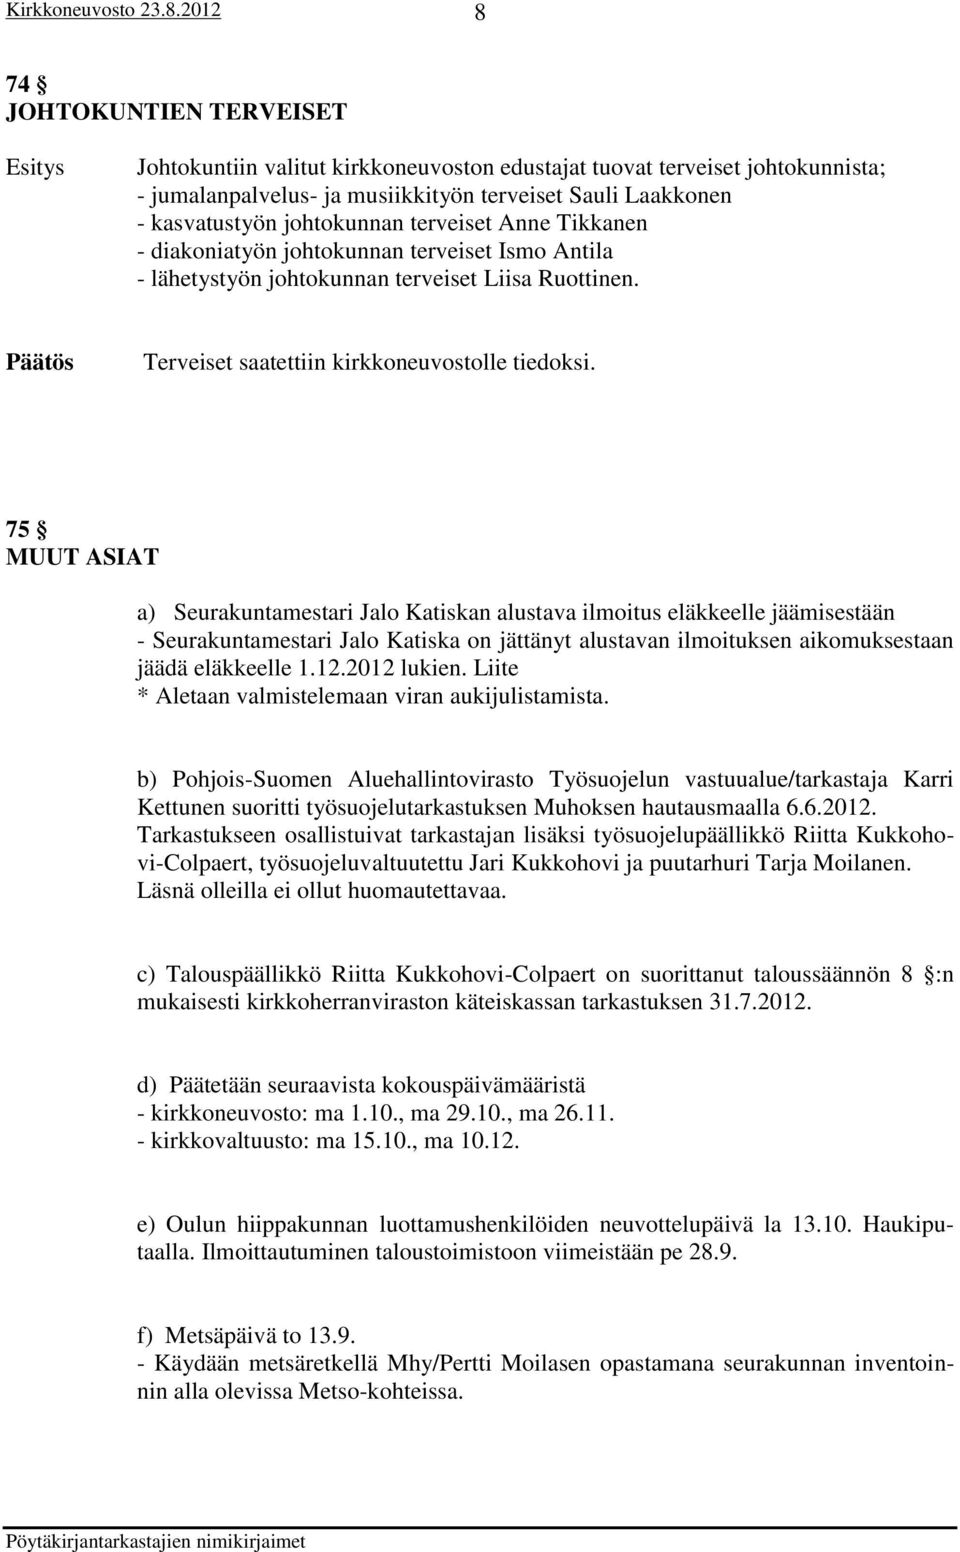 75 MUUT ASIAT a) Seurakuntamestari Jalo Katiskan alustava ilmoitus eläkkeelle jäämisestään - Seurakuntamestari Jalo Katiska on jättänyt alustavan ilmoituksen aikomuksestaan jäädä eläkkeelle 1.12.